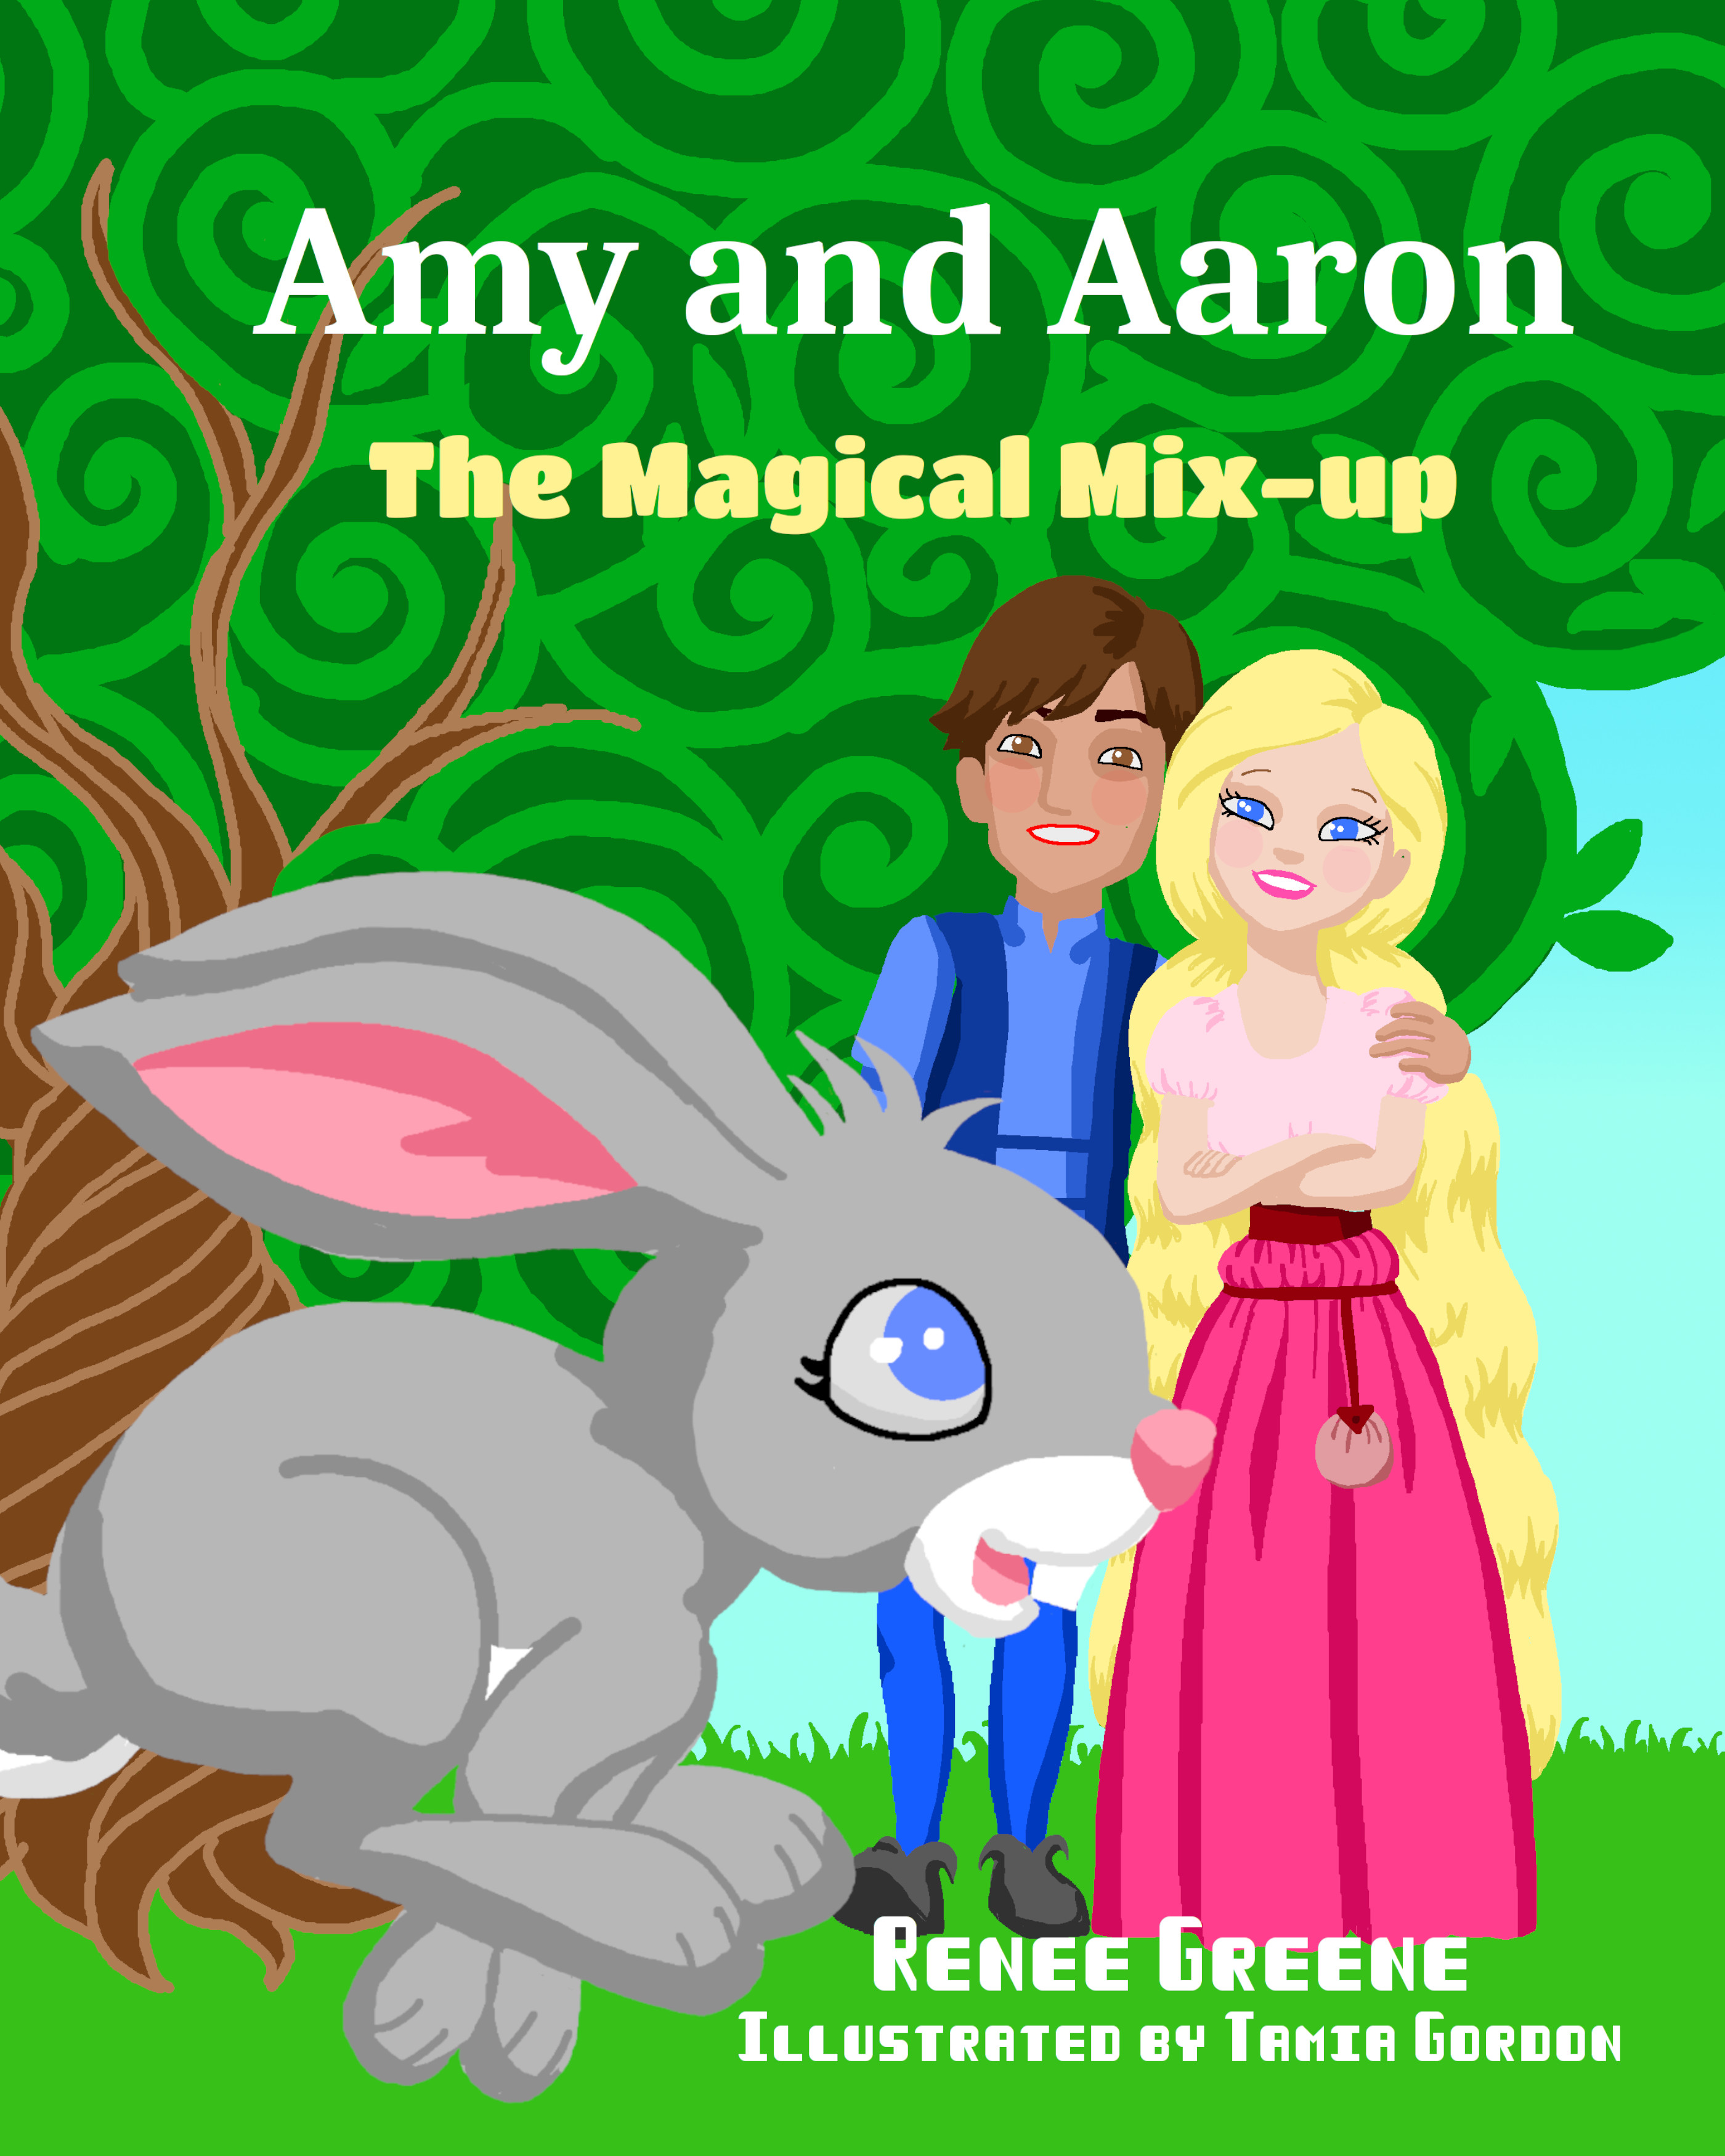 Amy and Aaron